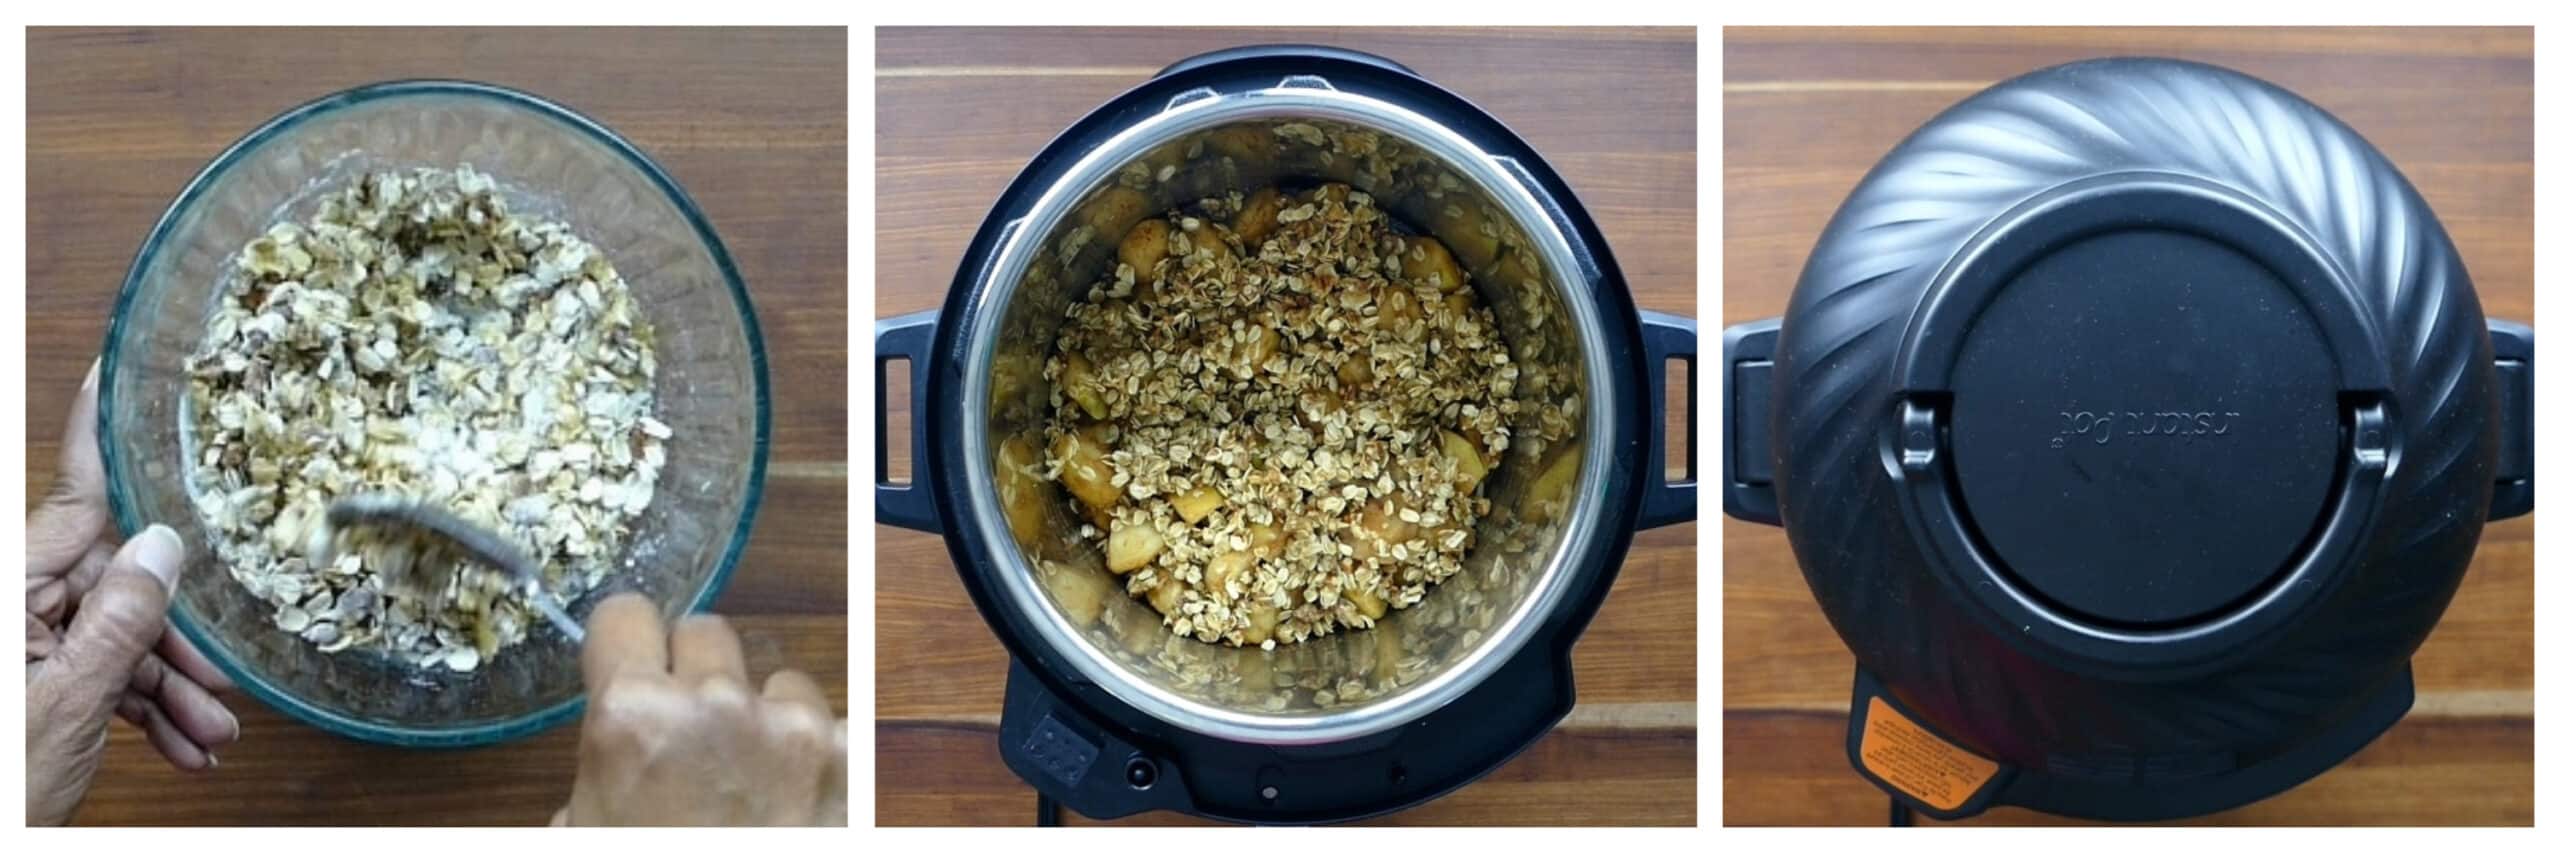 Instant Pot Apple Crisp Instructions collage - stir streusel ingredients, add over apples, air fryer lid on